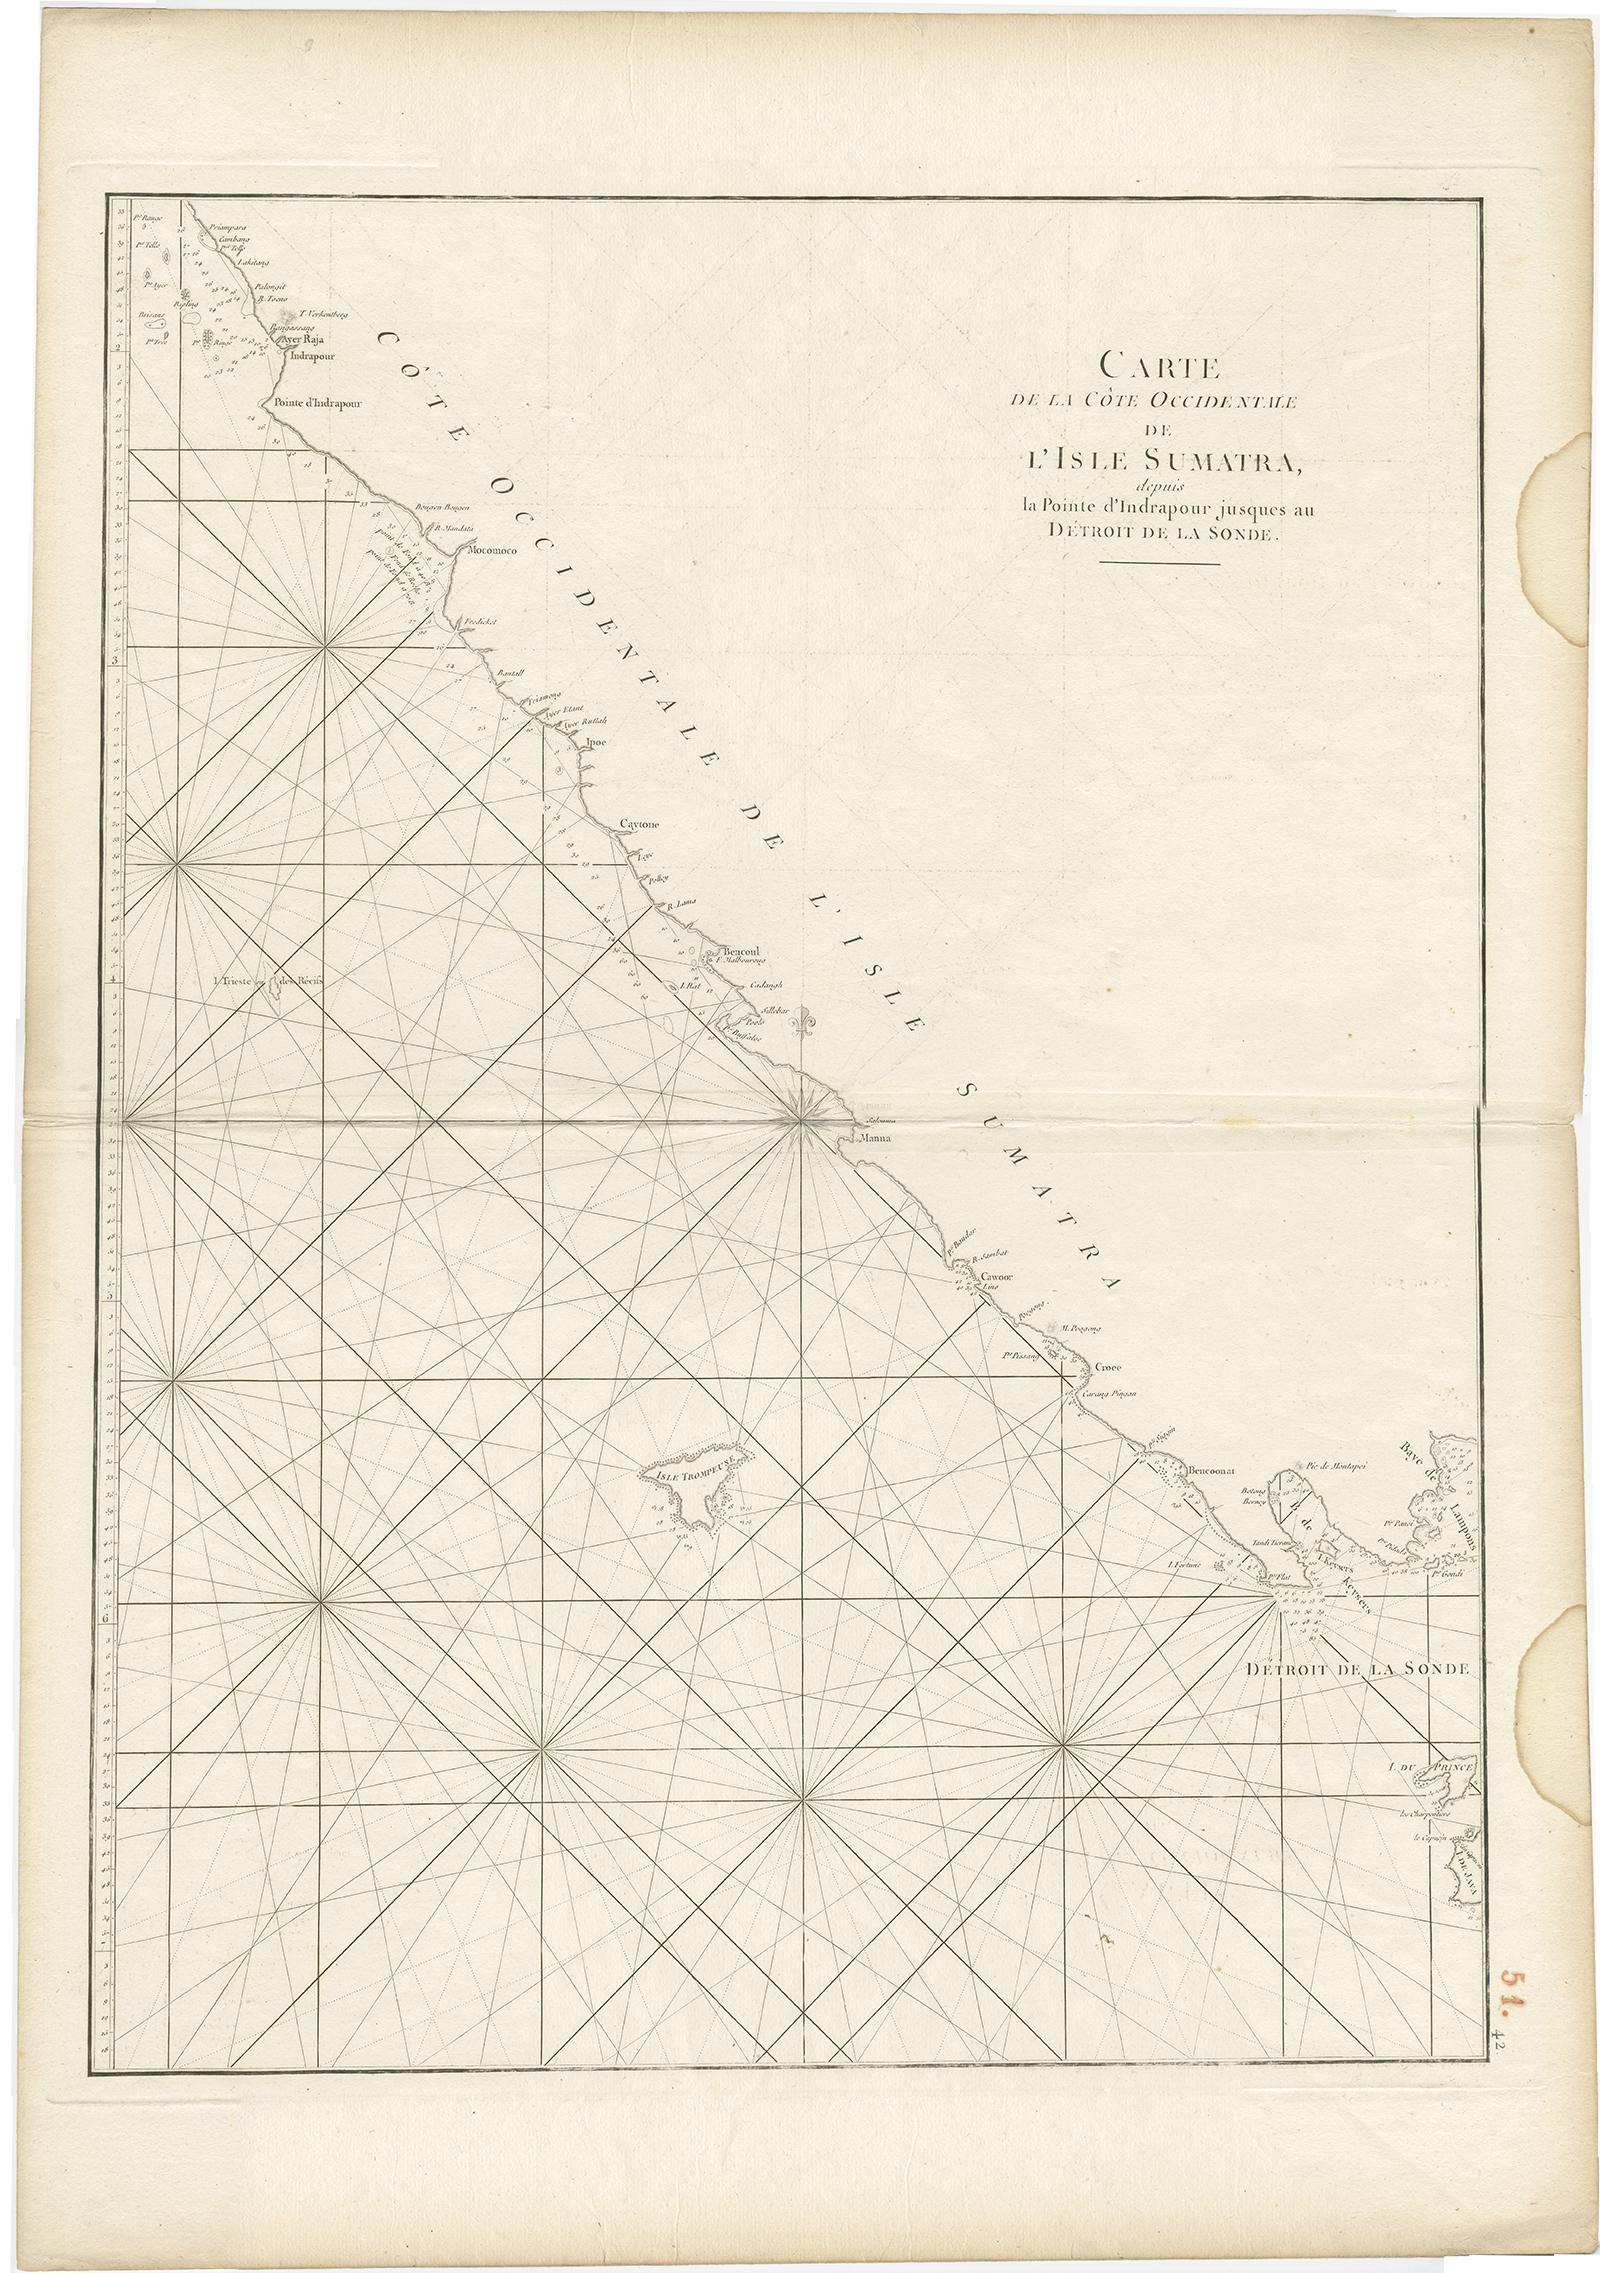 Antike Karte mit dem Titel 'Carte de la Côte Occidentale de l'Isle Sumatra'. Seekarte des Teils der Südwestküste von Sumatra mit den Inseln Nassau (Nias) und Fortune.

Künstler und Graveure: D' Après de Mannevillette (1707-1780) war ein berühmter